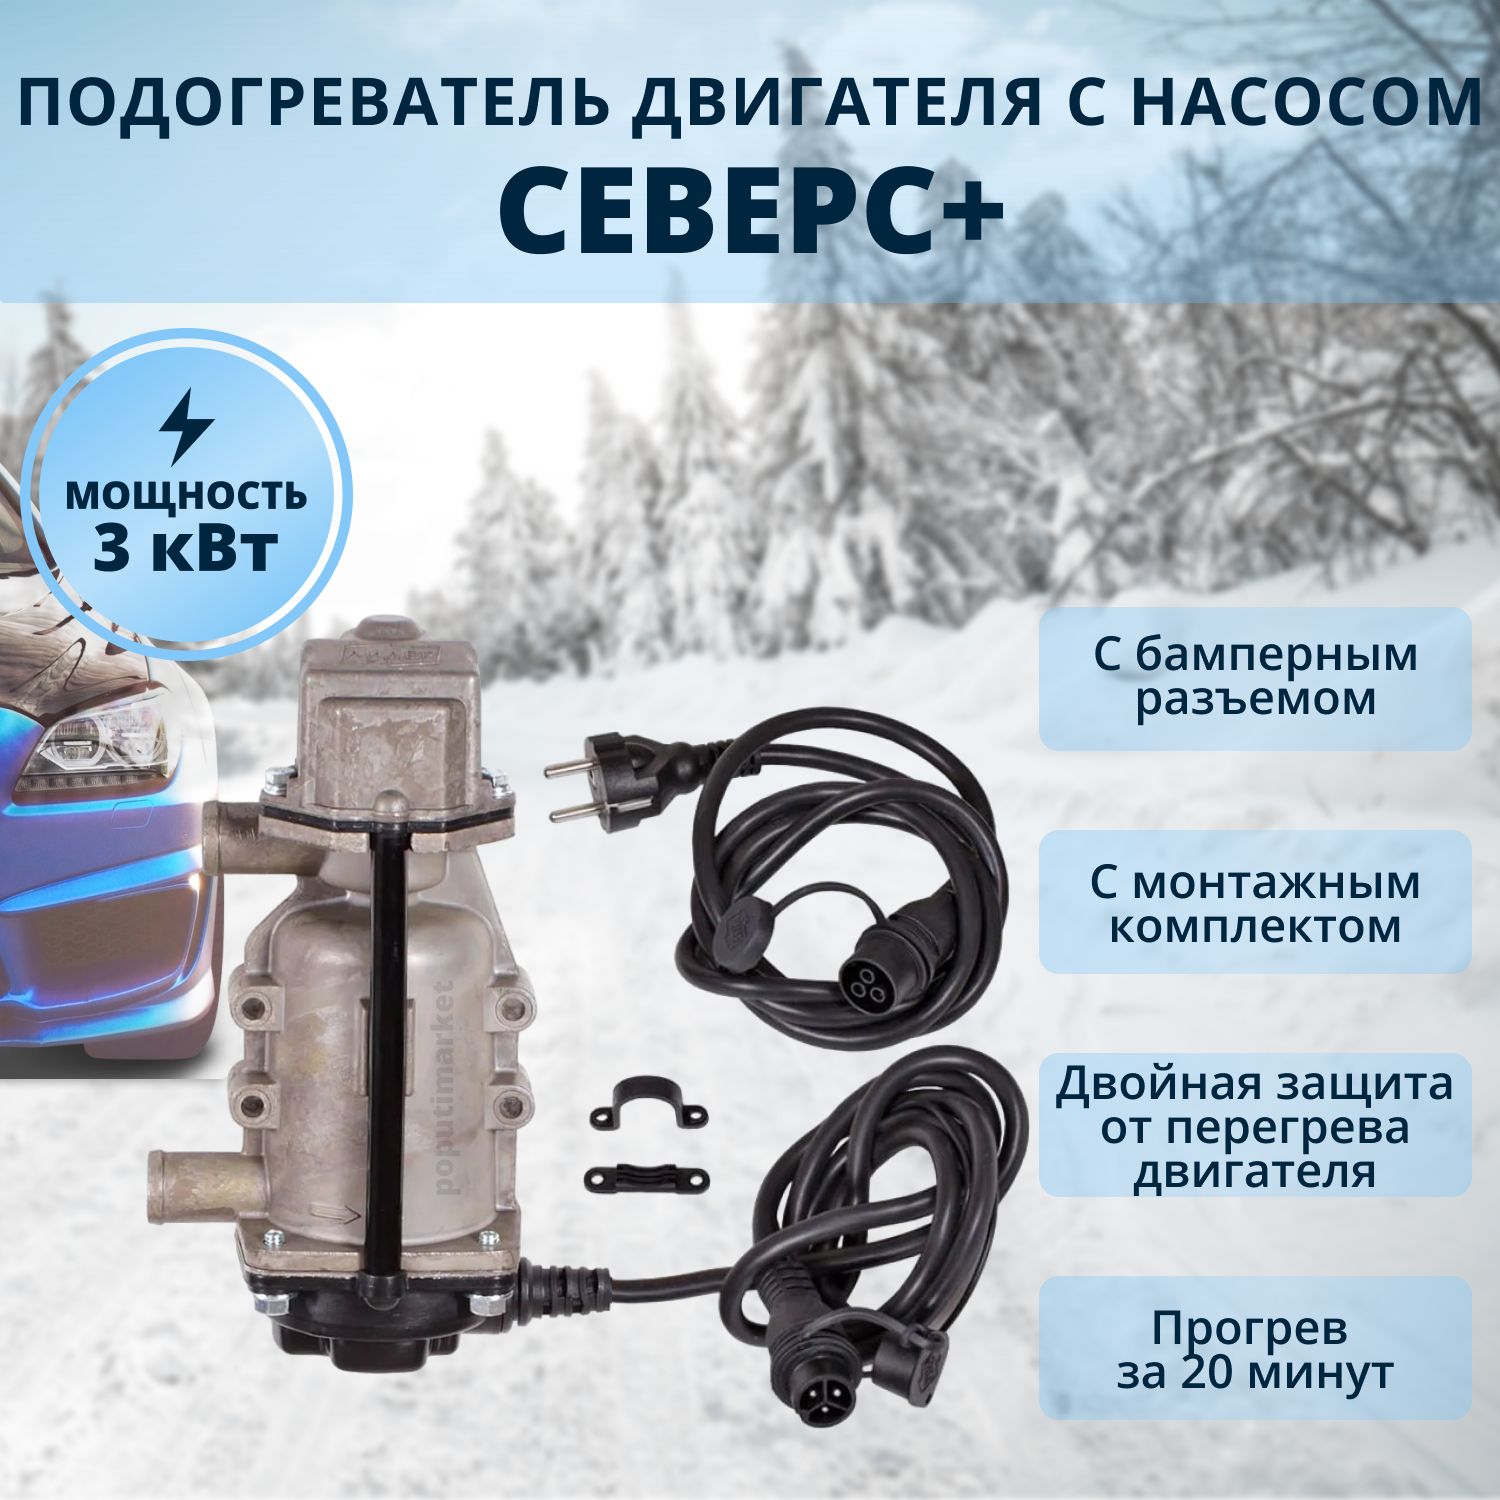 Предпусковые подогреватели двигателя с помпой купить в Казахстане: цены, отзывы